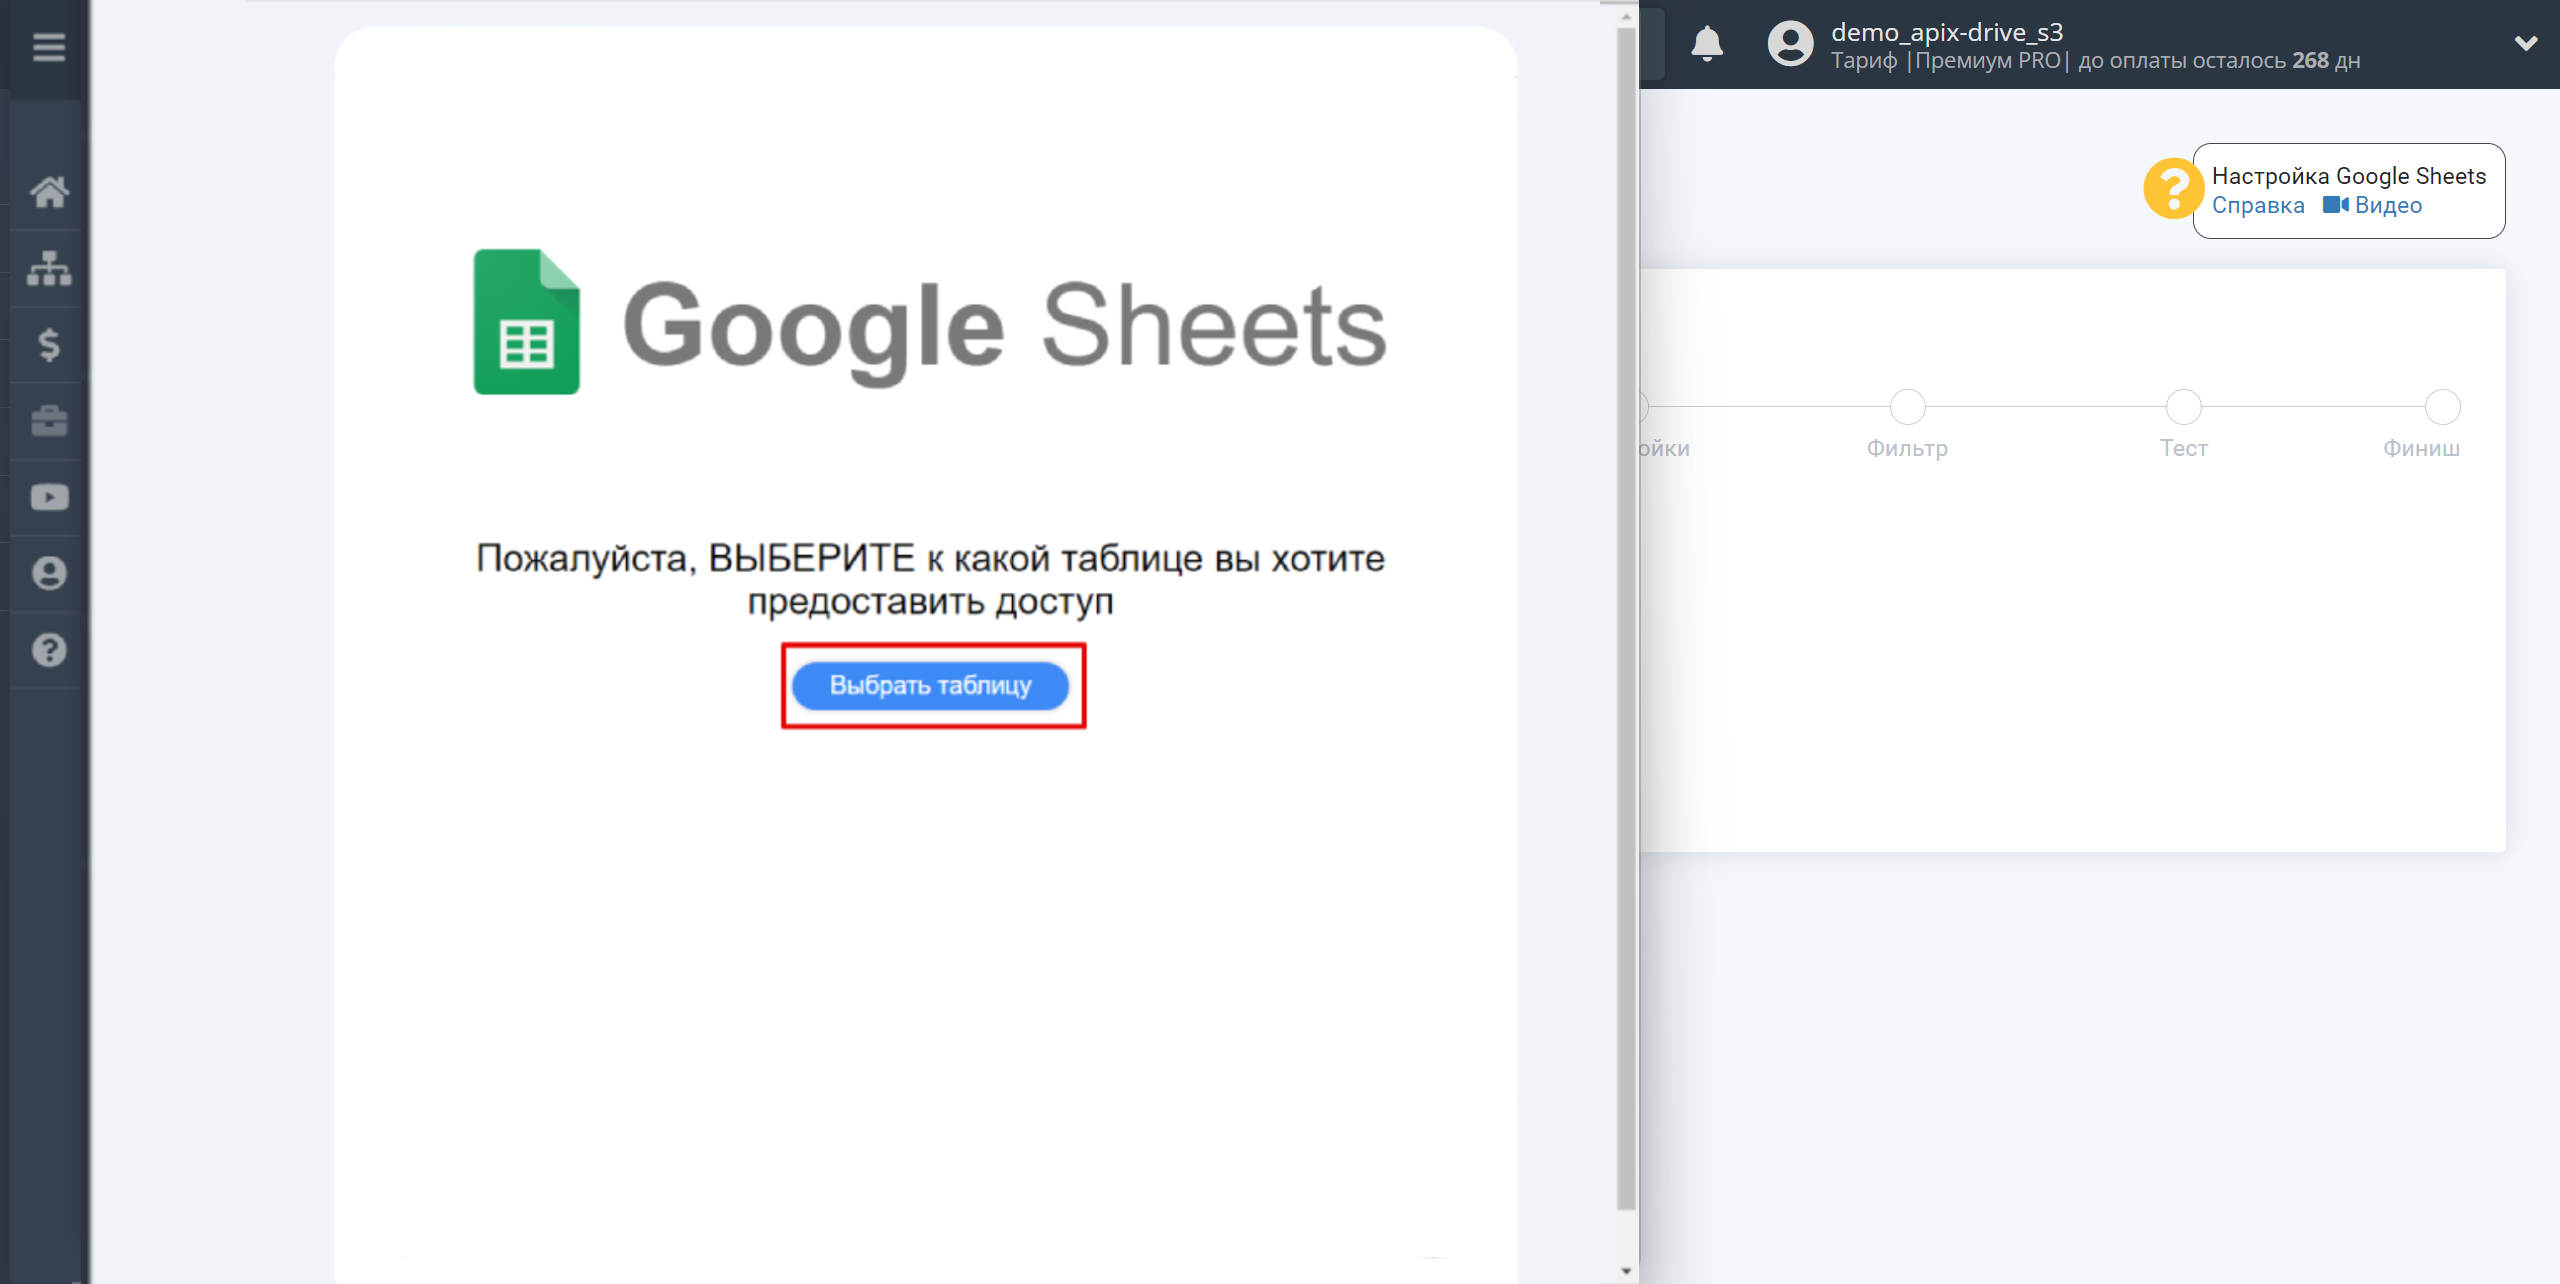 Настройка Поиска Чата HelpCrunch в Google Sheets | Подключение аккаунта Источника